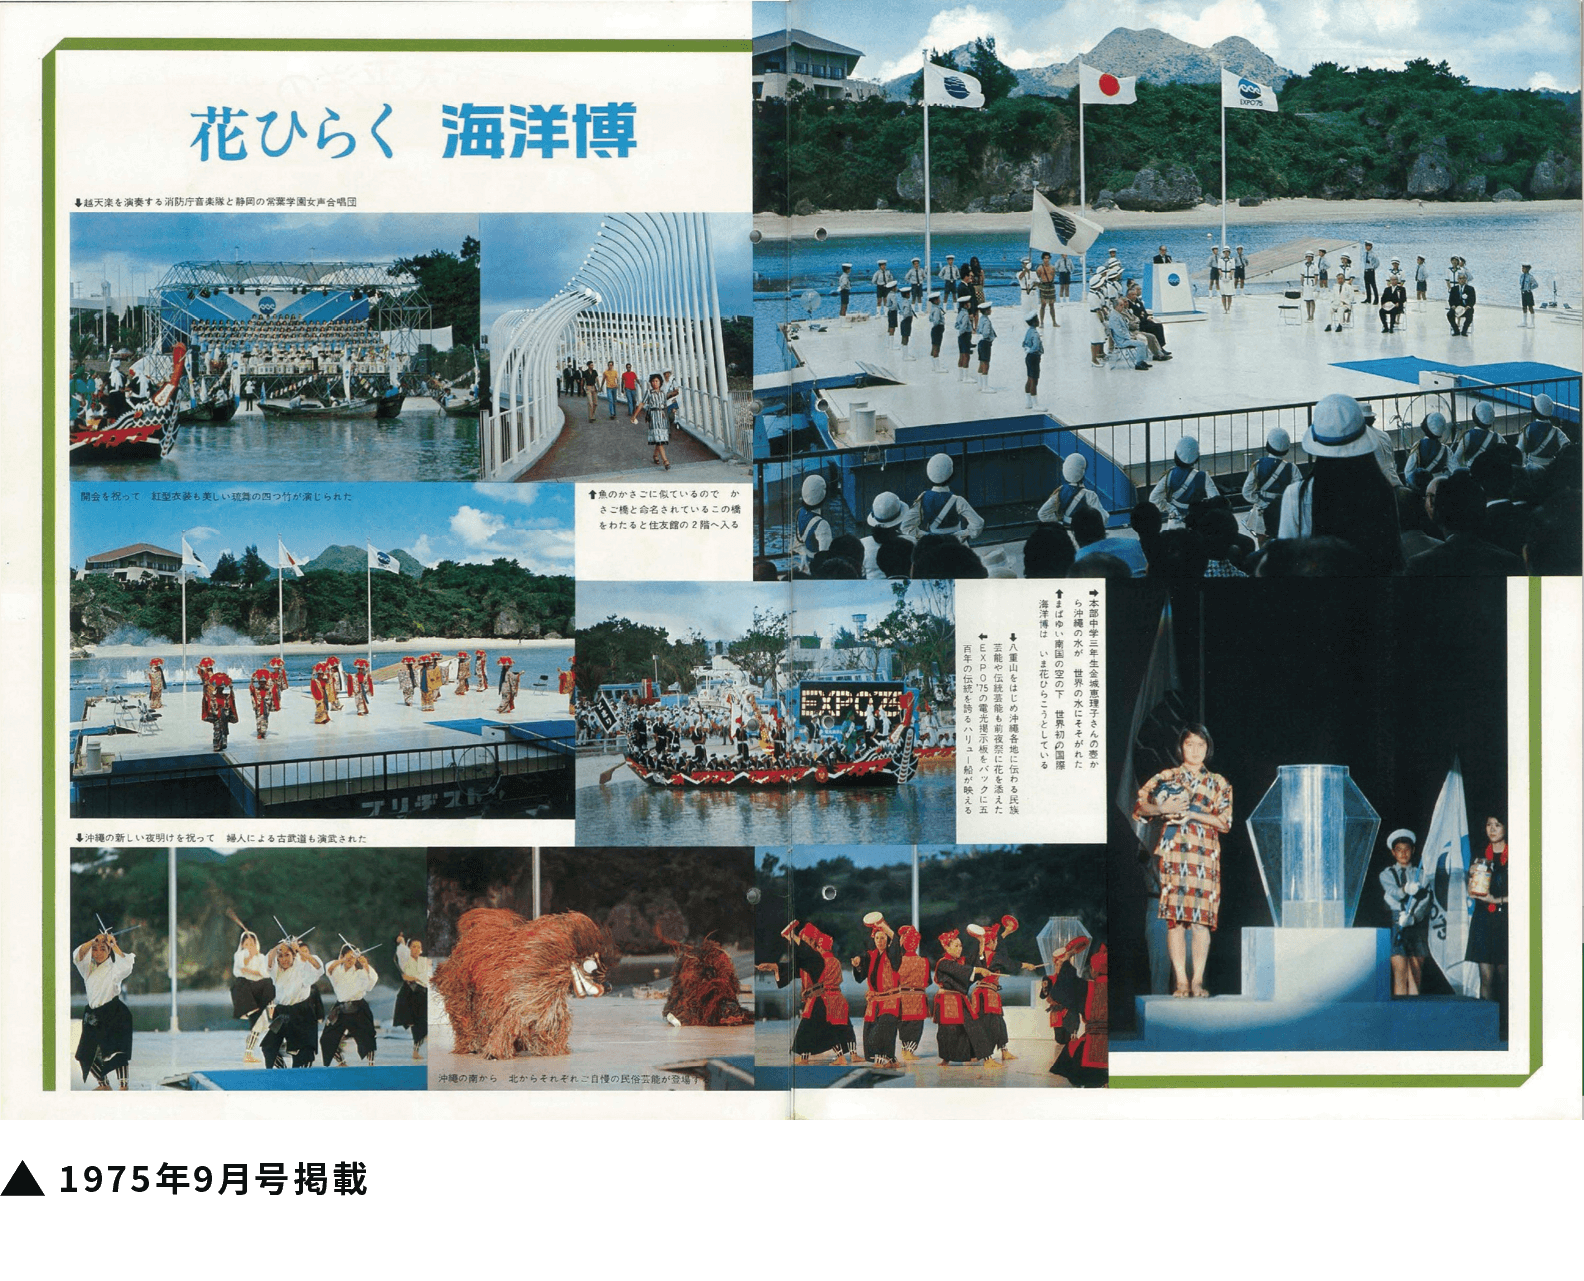 「沖縄国際海洋博覧会」開幕。金城哲夫がセレモニーの企画・演出を担当